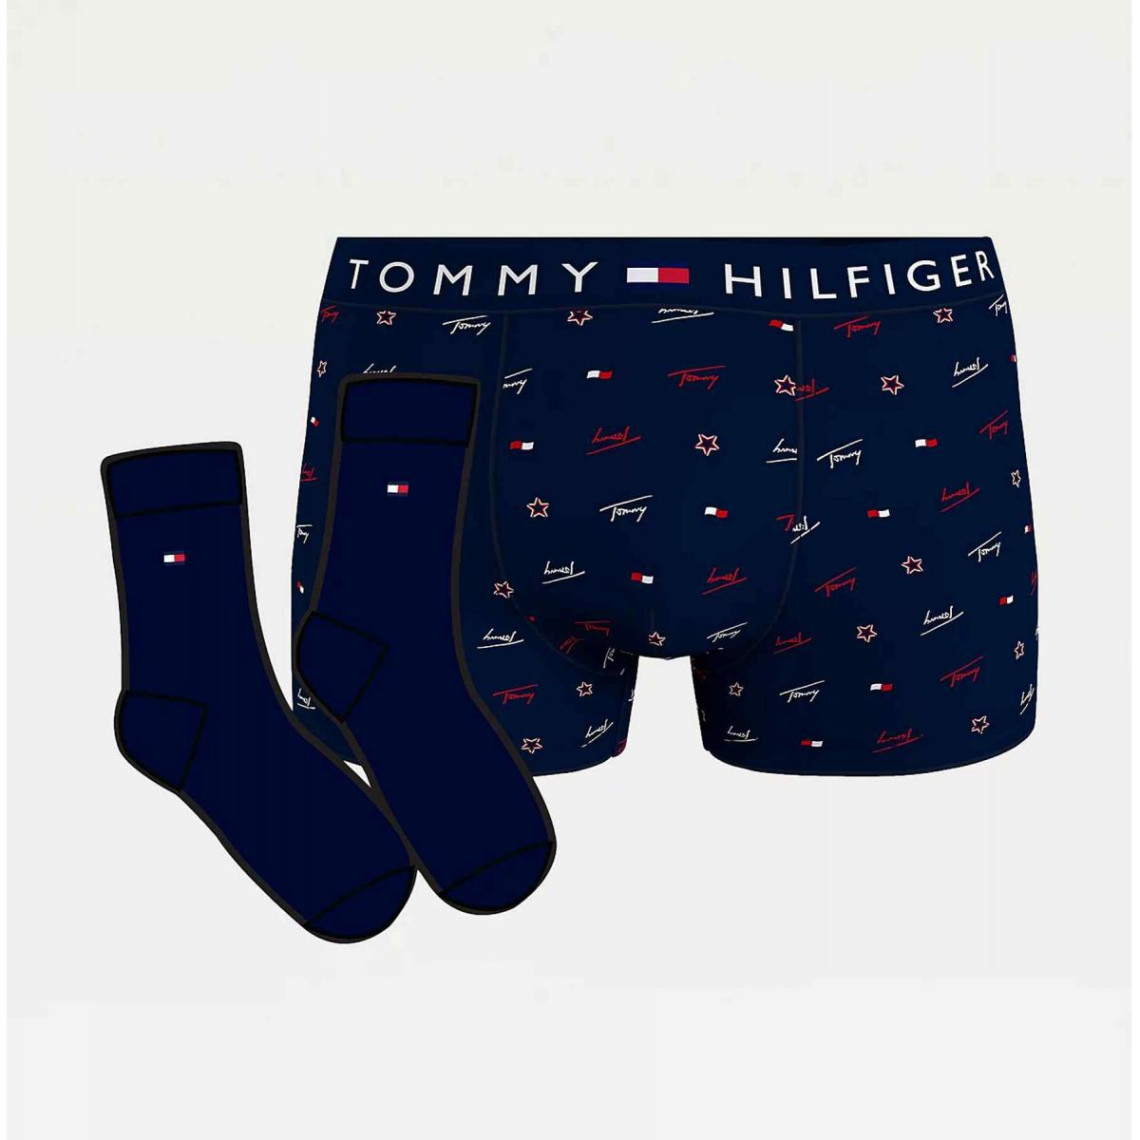 Visiter la boutique Tommy HilfigerTommy Hilfiger Chaussettes Homme 